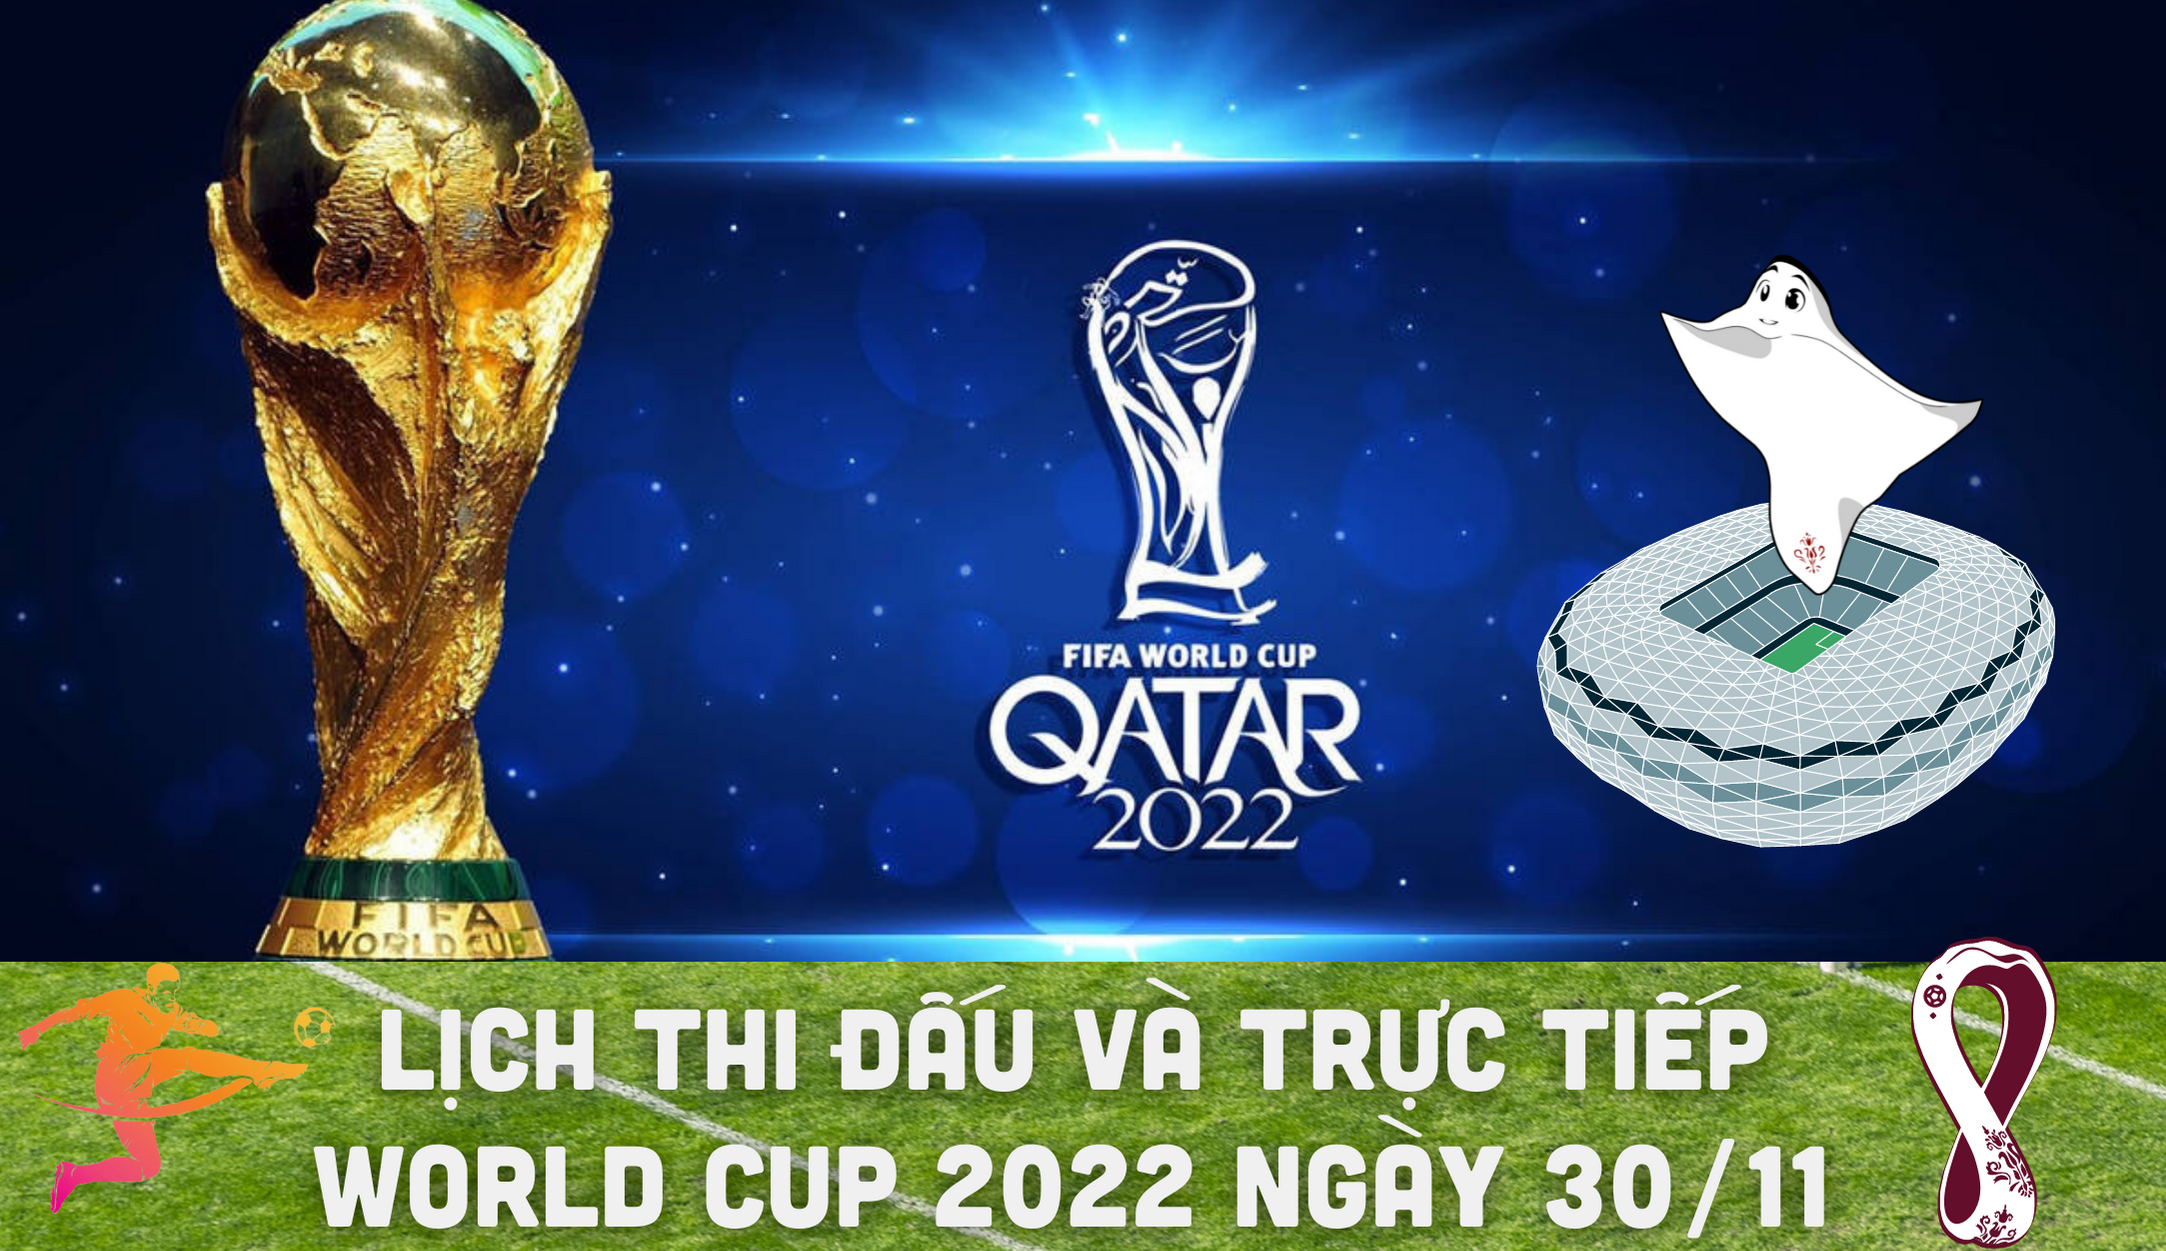 Lịch thi đấu và trực tiếp World Cup 2022 ngày 30/11